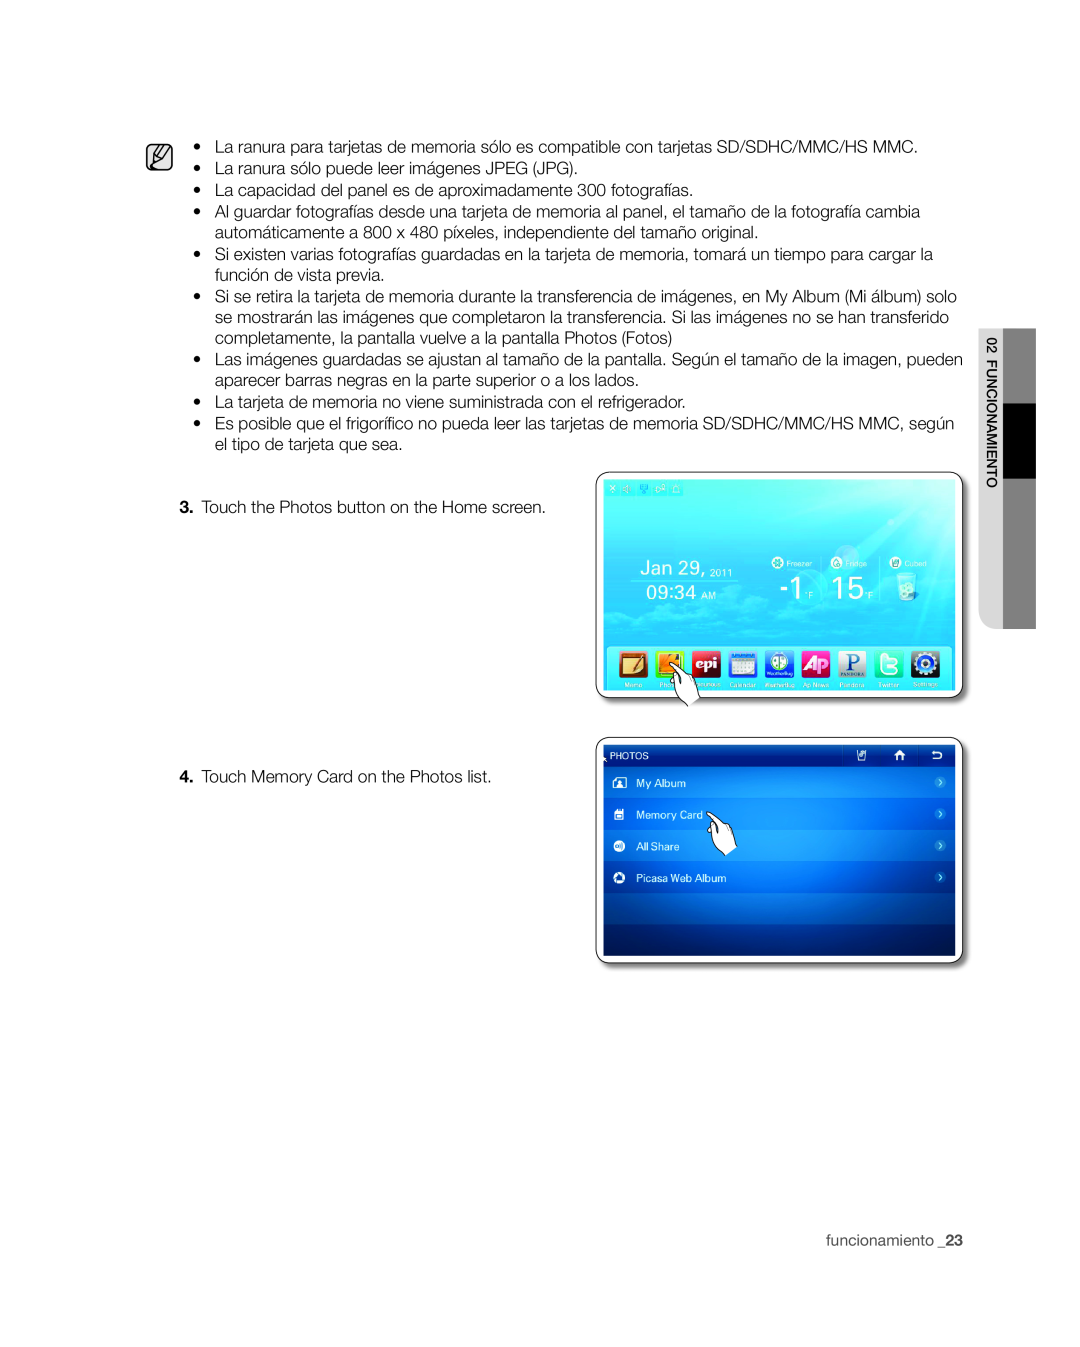 Samsung RSG309** user manual La ranura sólo puede leer imágenes JPEG JPG 